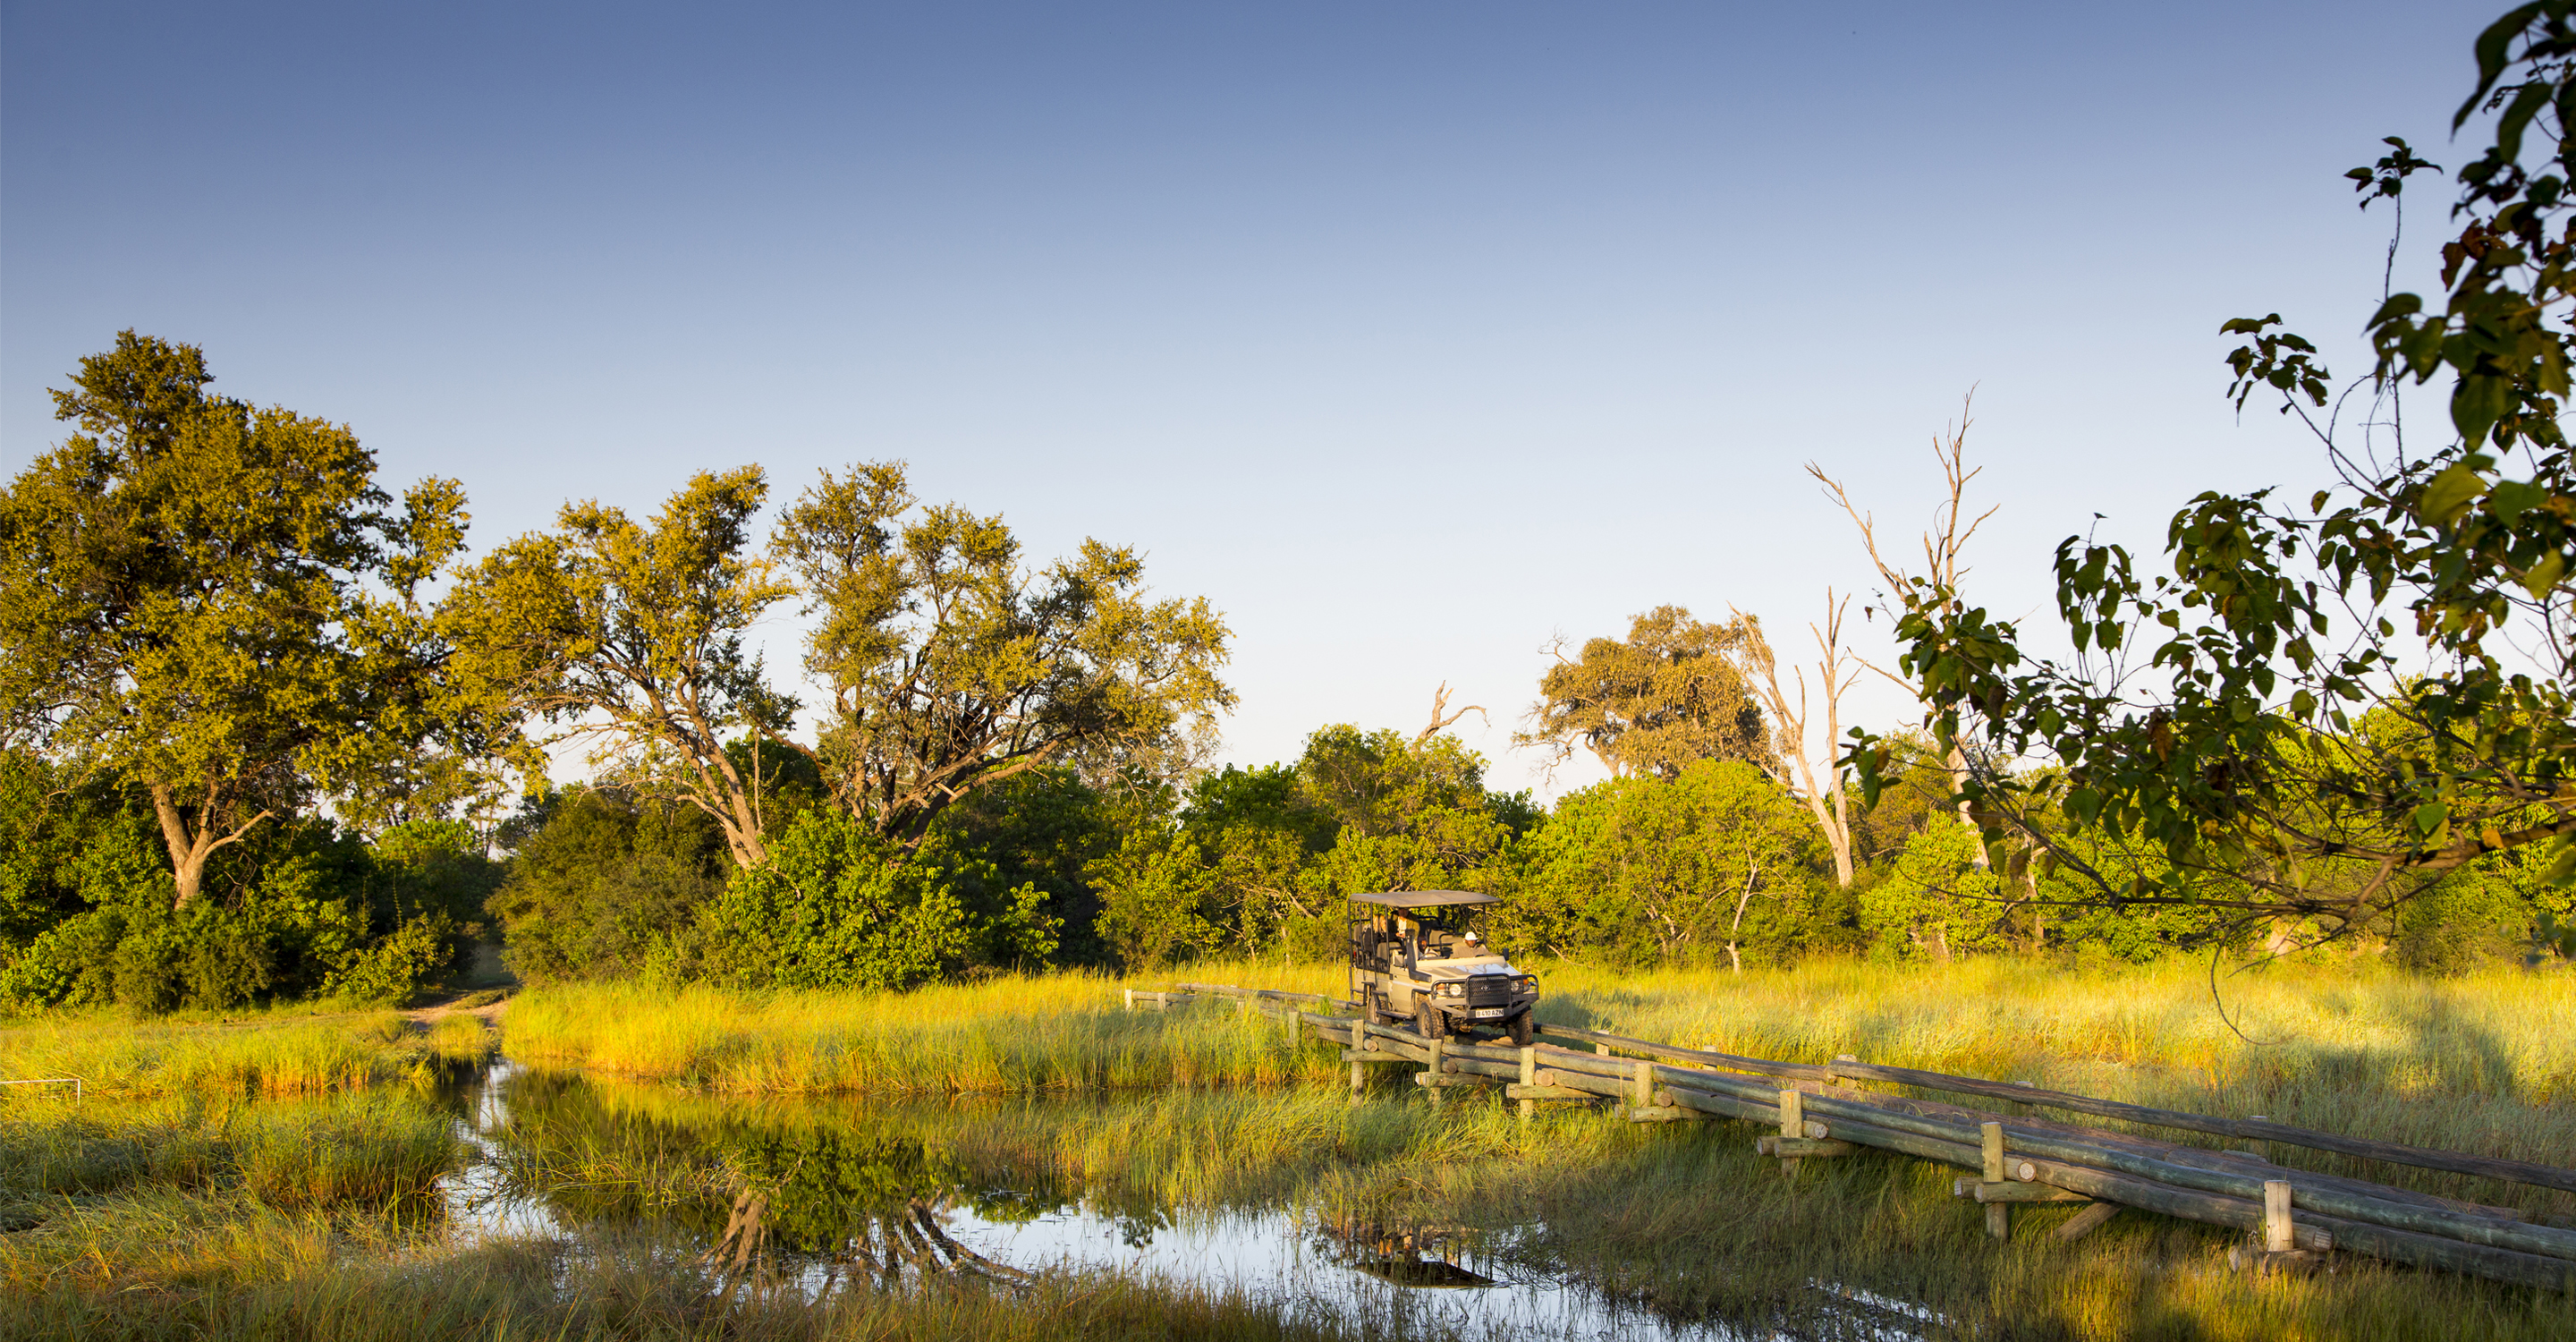 African safari truck on a bridge in the Okavango Delta, Botswana